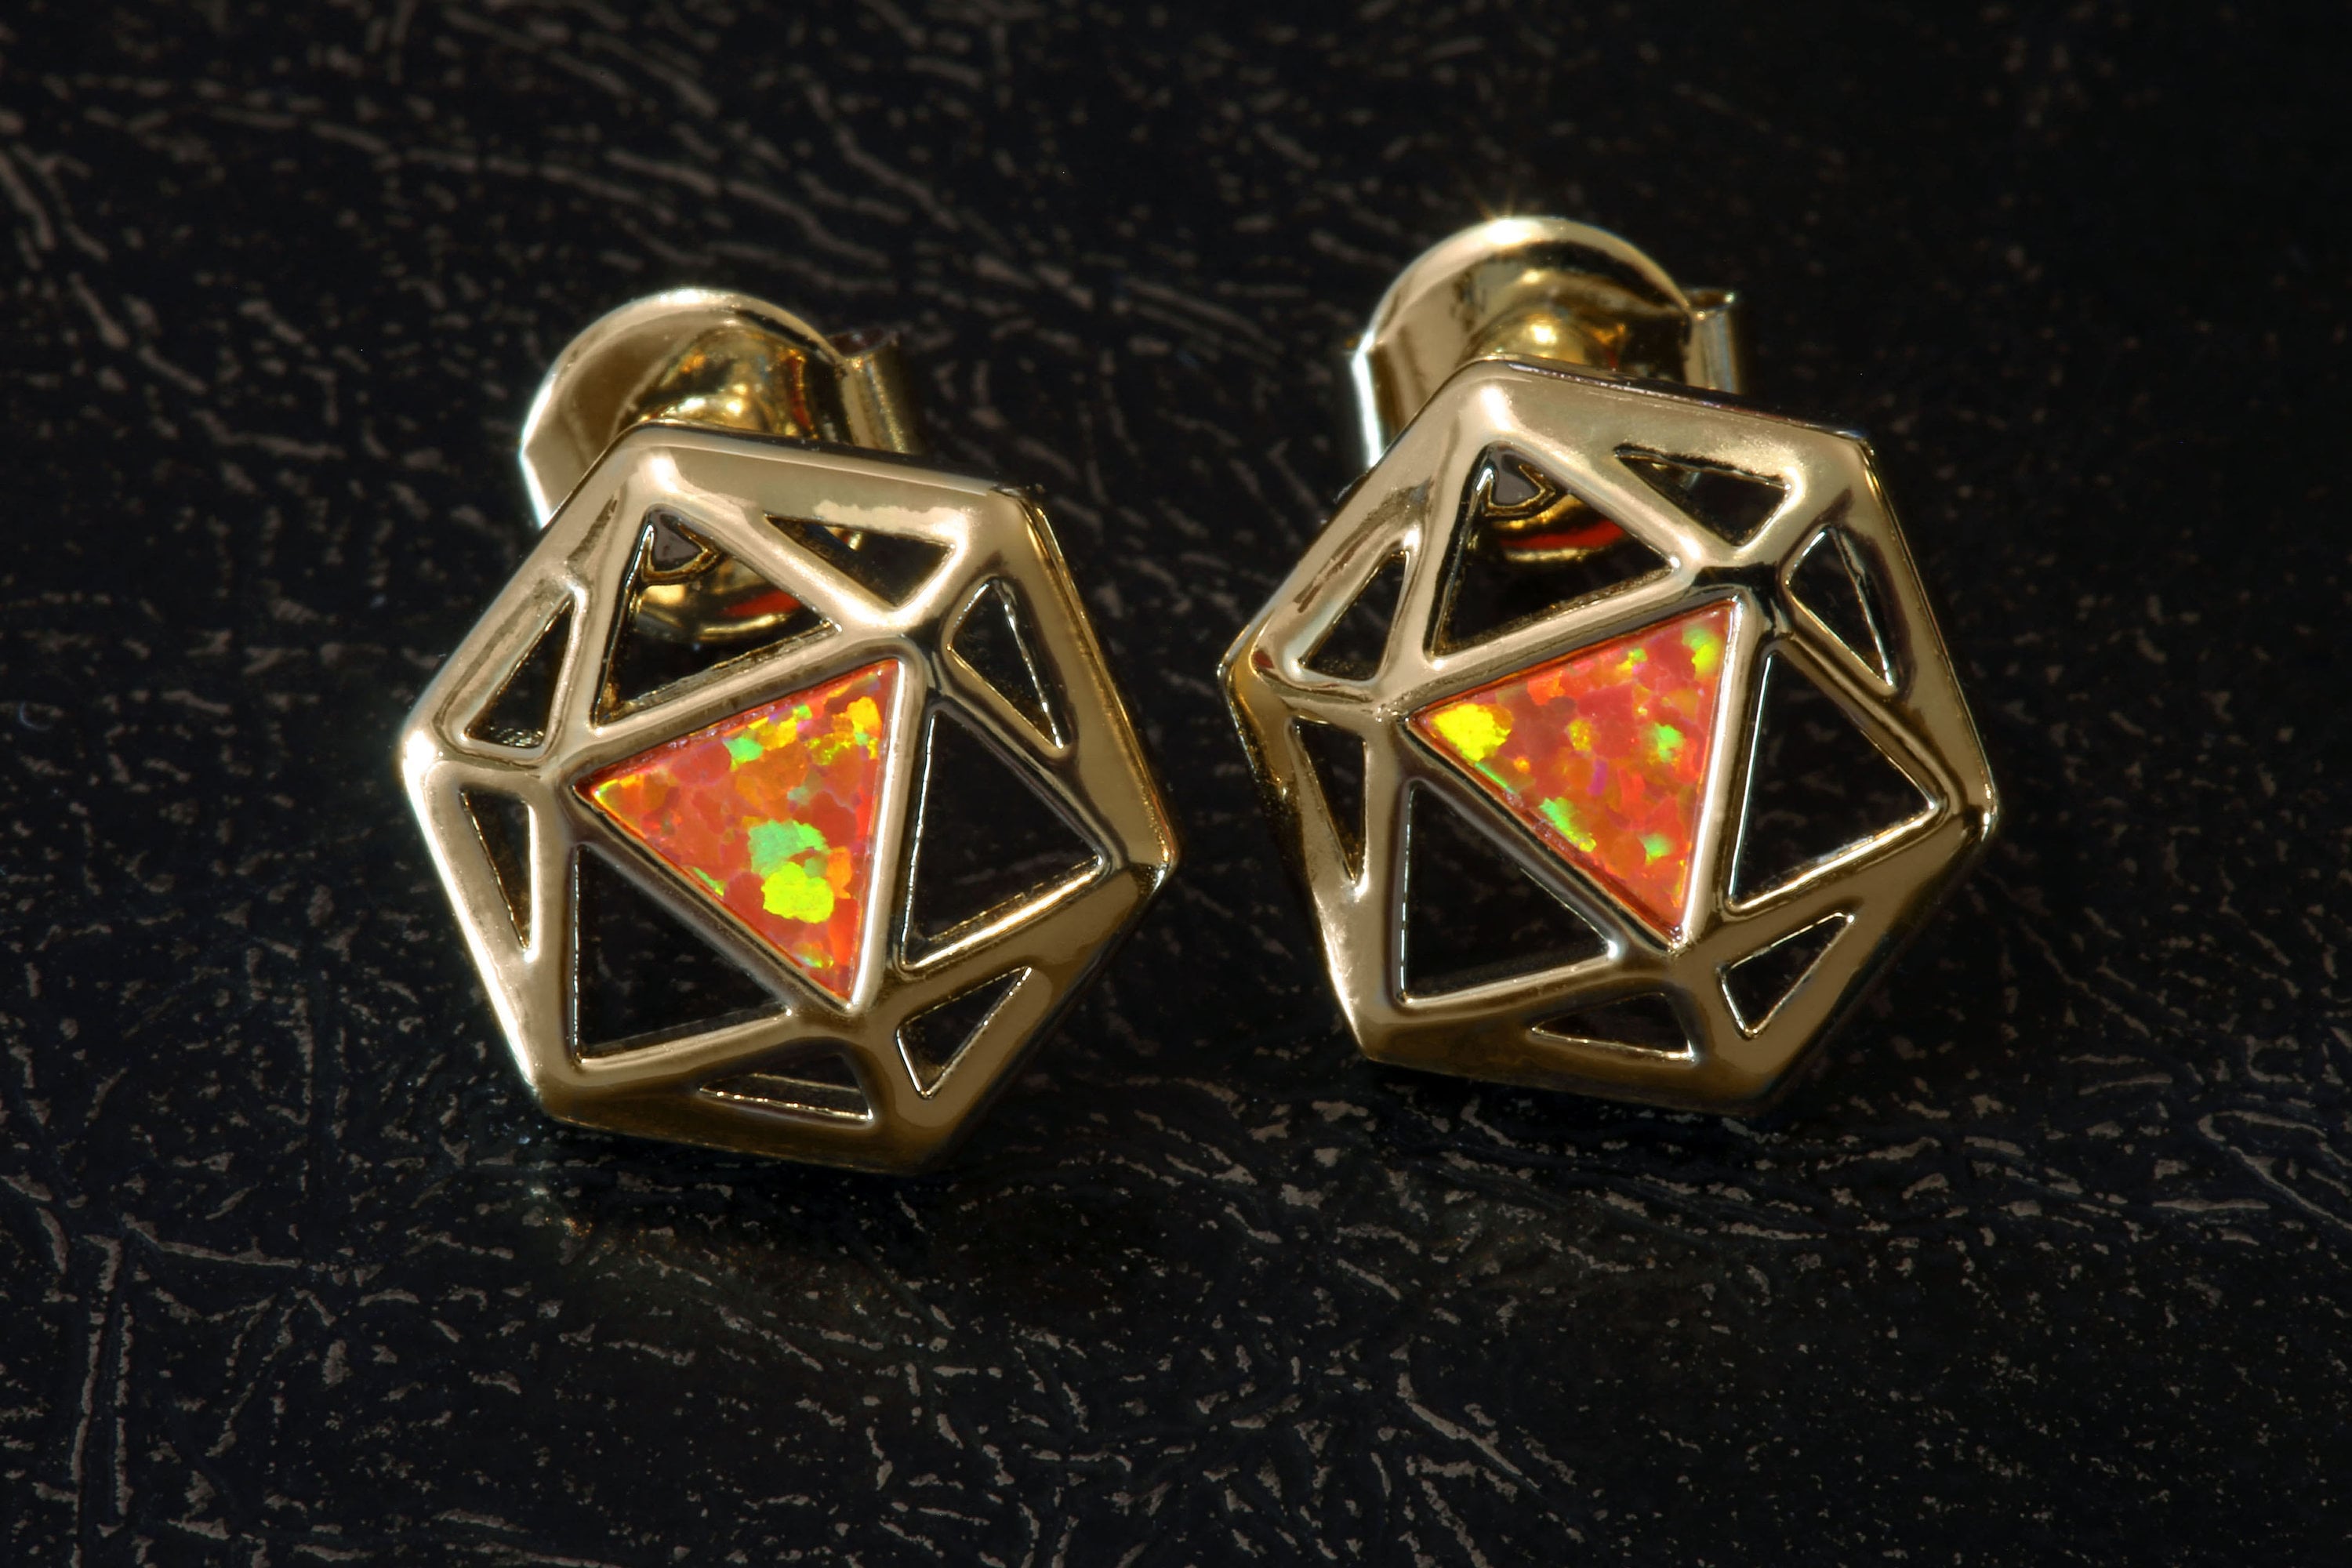 D20 Dice stud earrings, Golden dice earrings with fiery orange opal